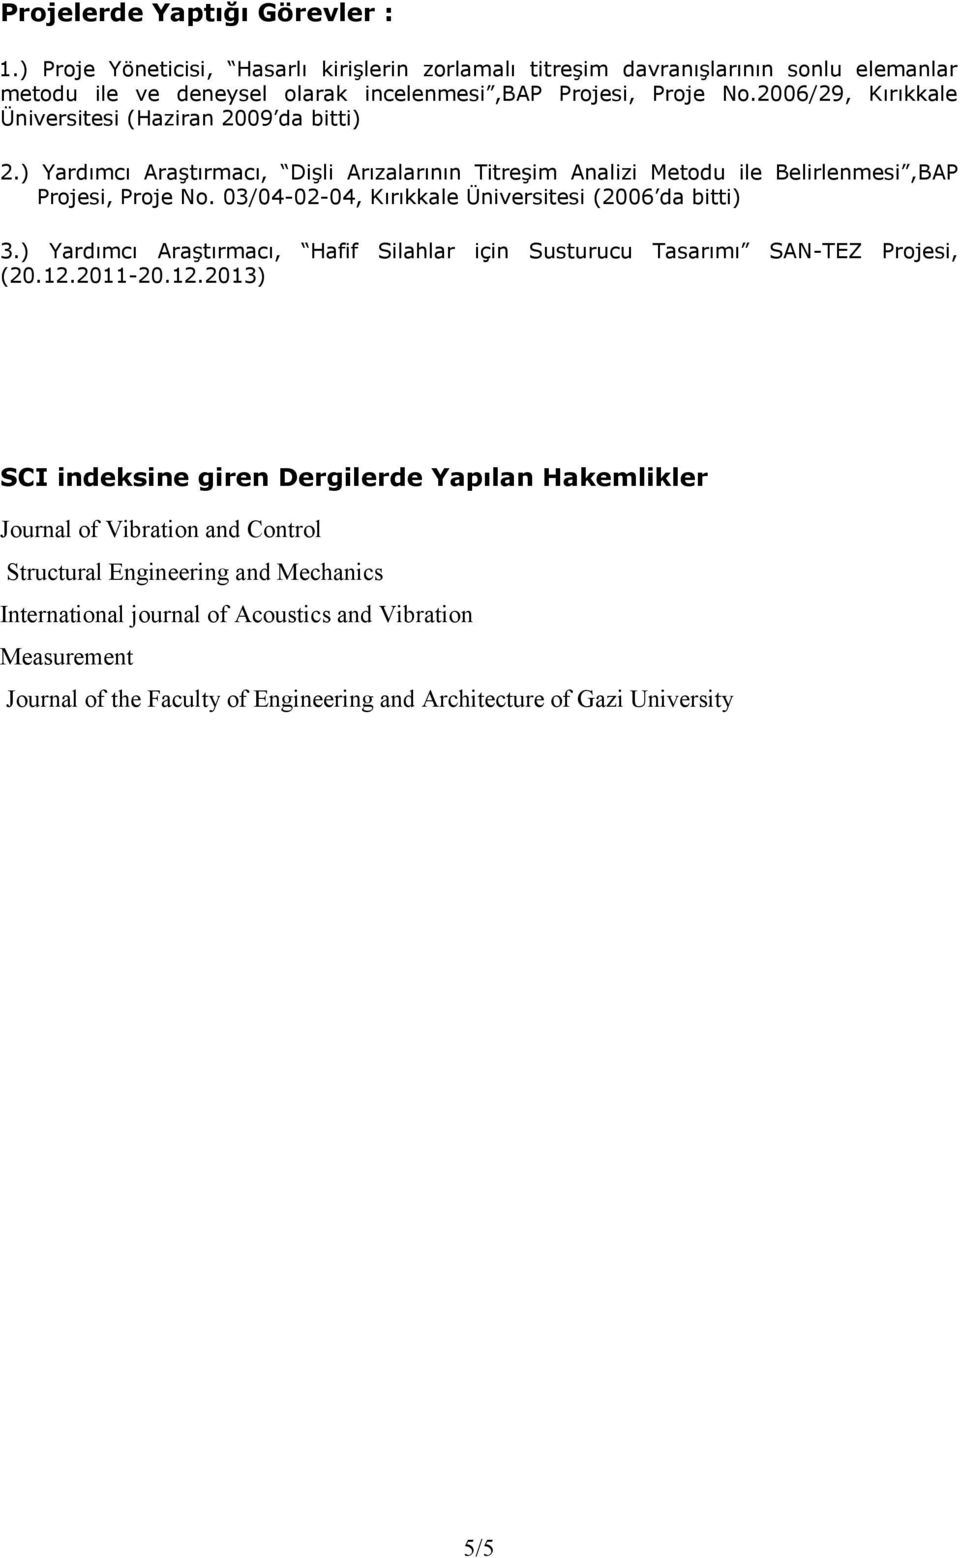 03/04-02-04, Kırıkkale Üniversitesi (2006 da bitti) 3.) Yardımcı Araştırmacı, Hafif Silahlar için Susturucu Tasarımı SAN-TEZ Projesi, (20.12.